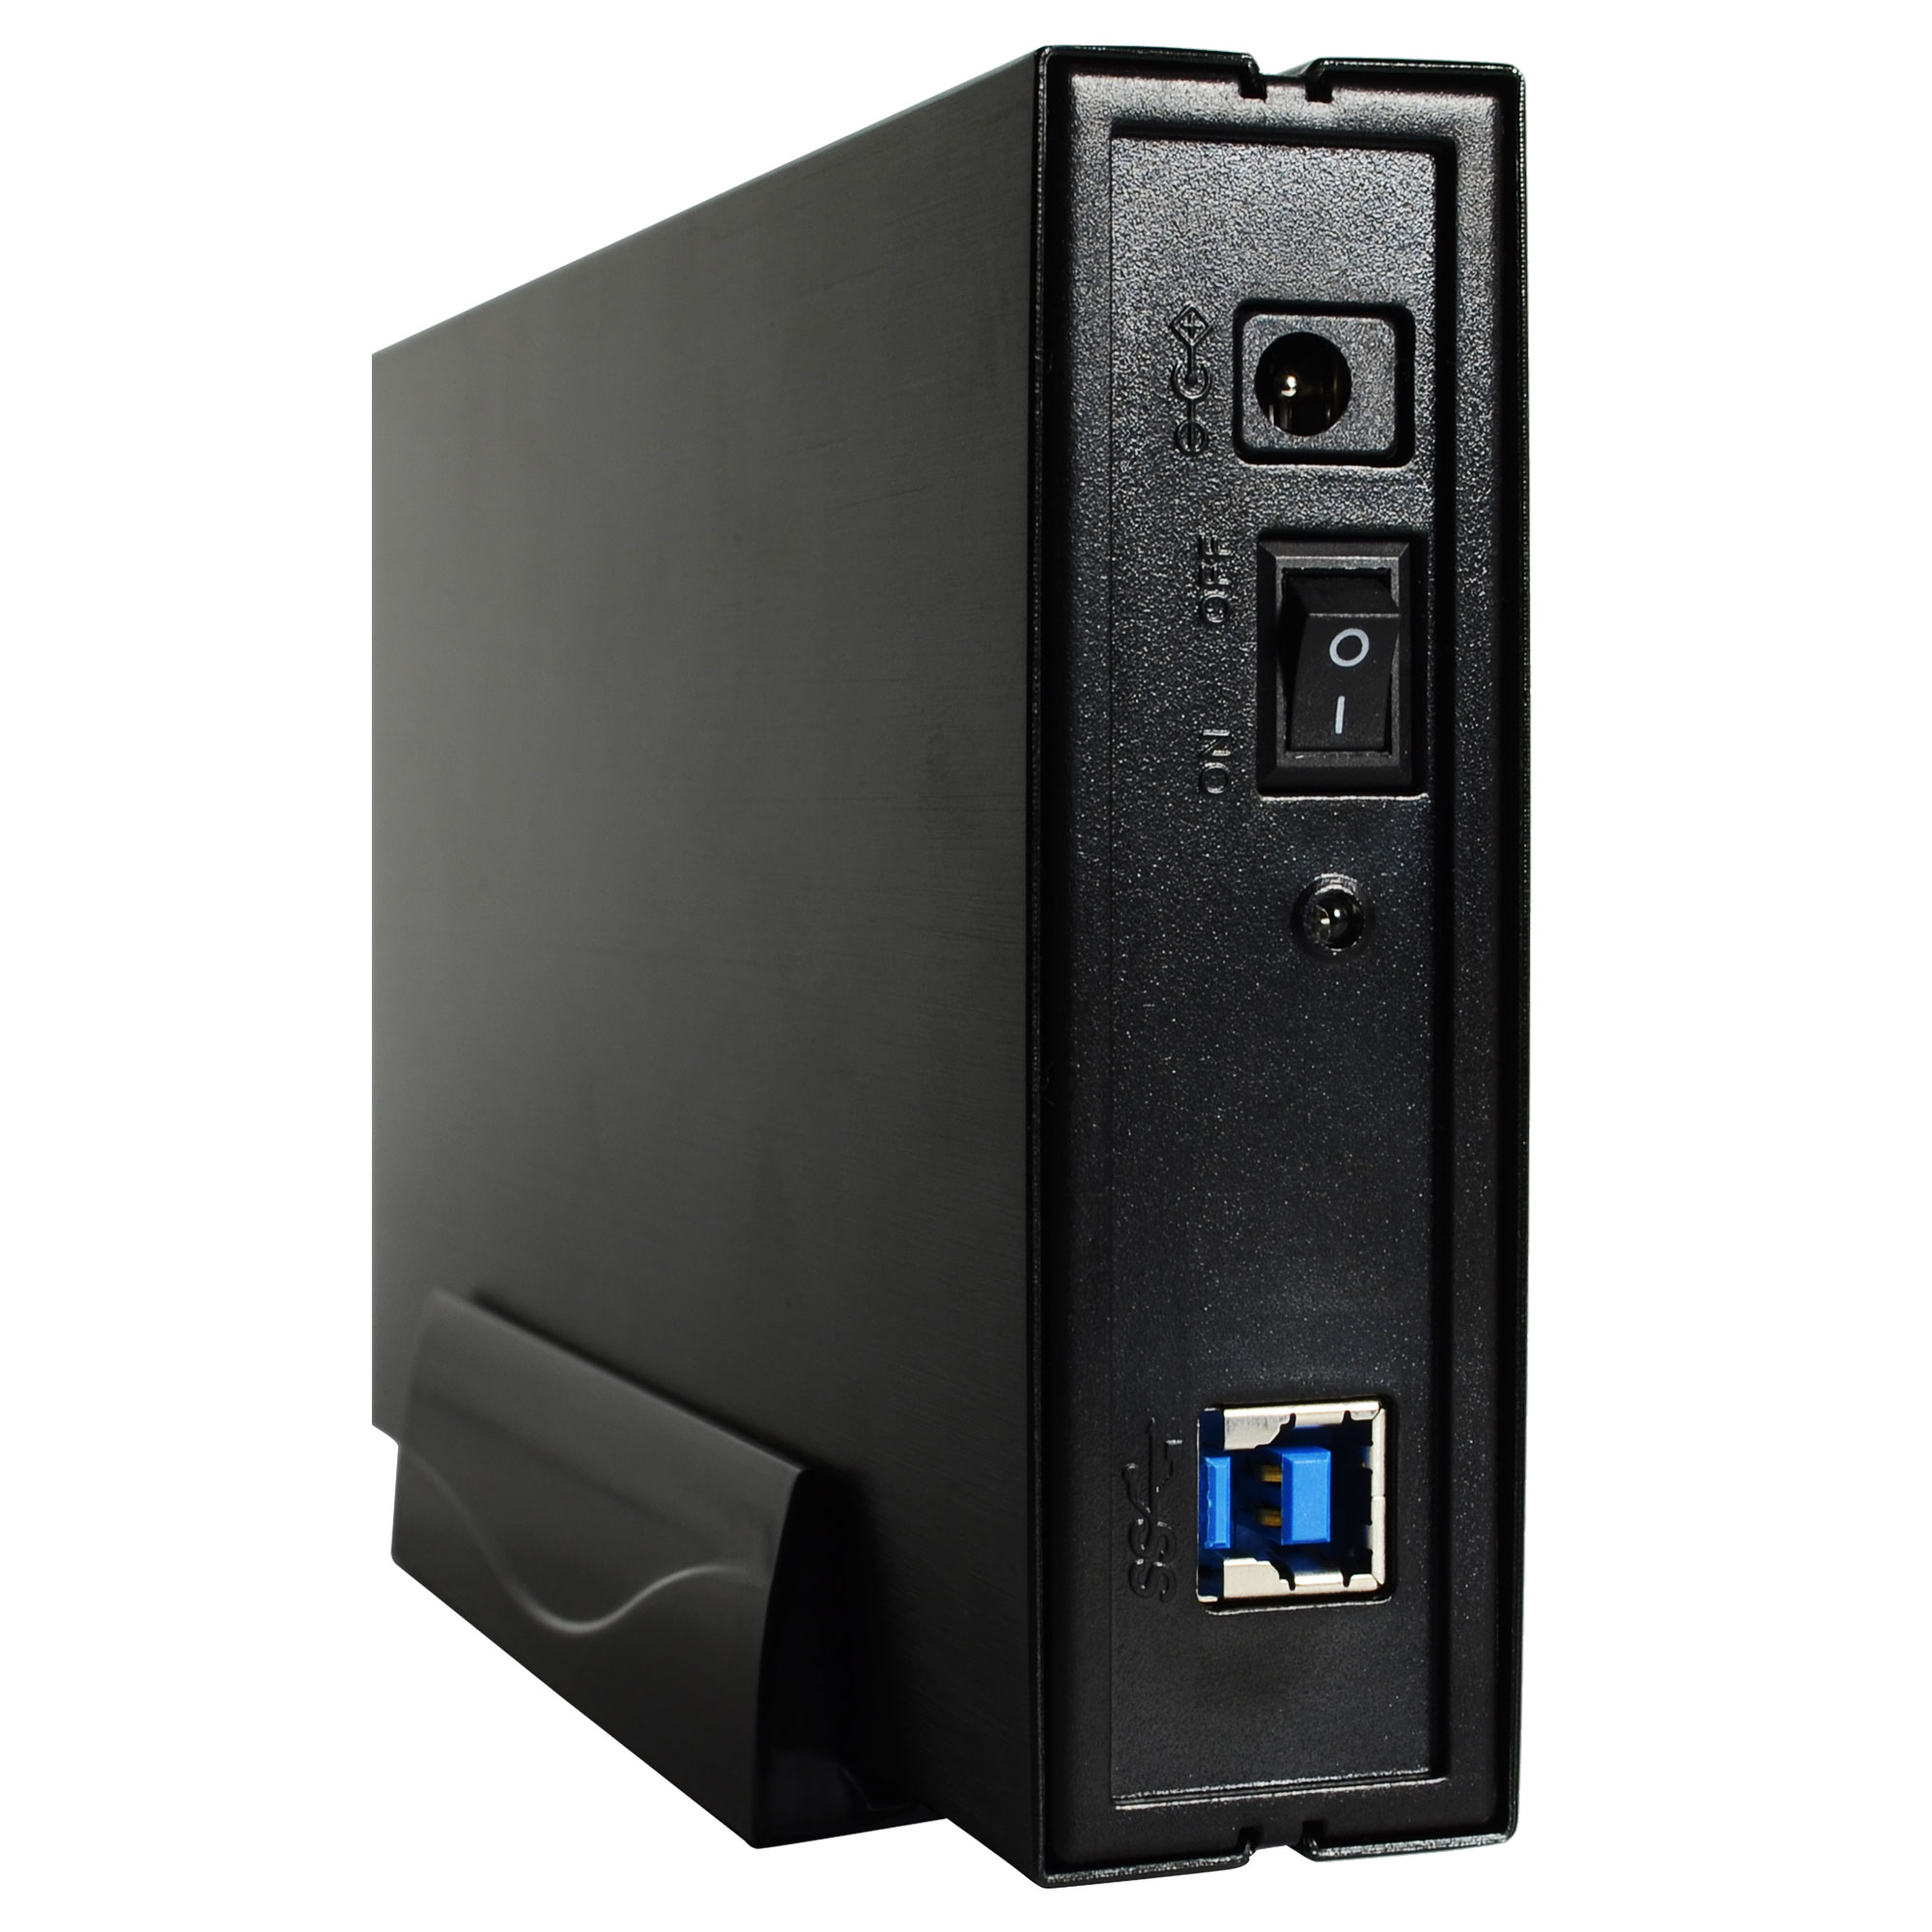 PCやデジタルTVなど、接続している機器と連動してHDDケースの電源をON/OFFにできる「電源連動機能」を搭載